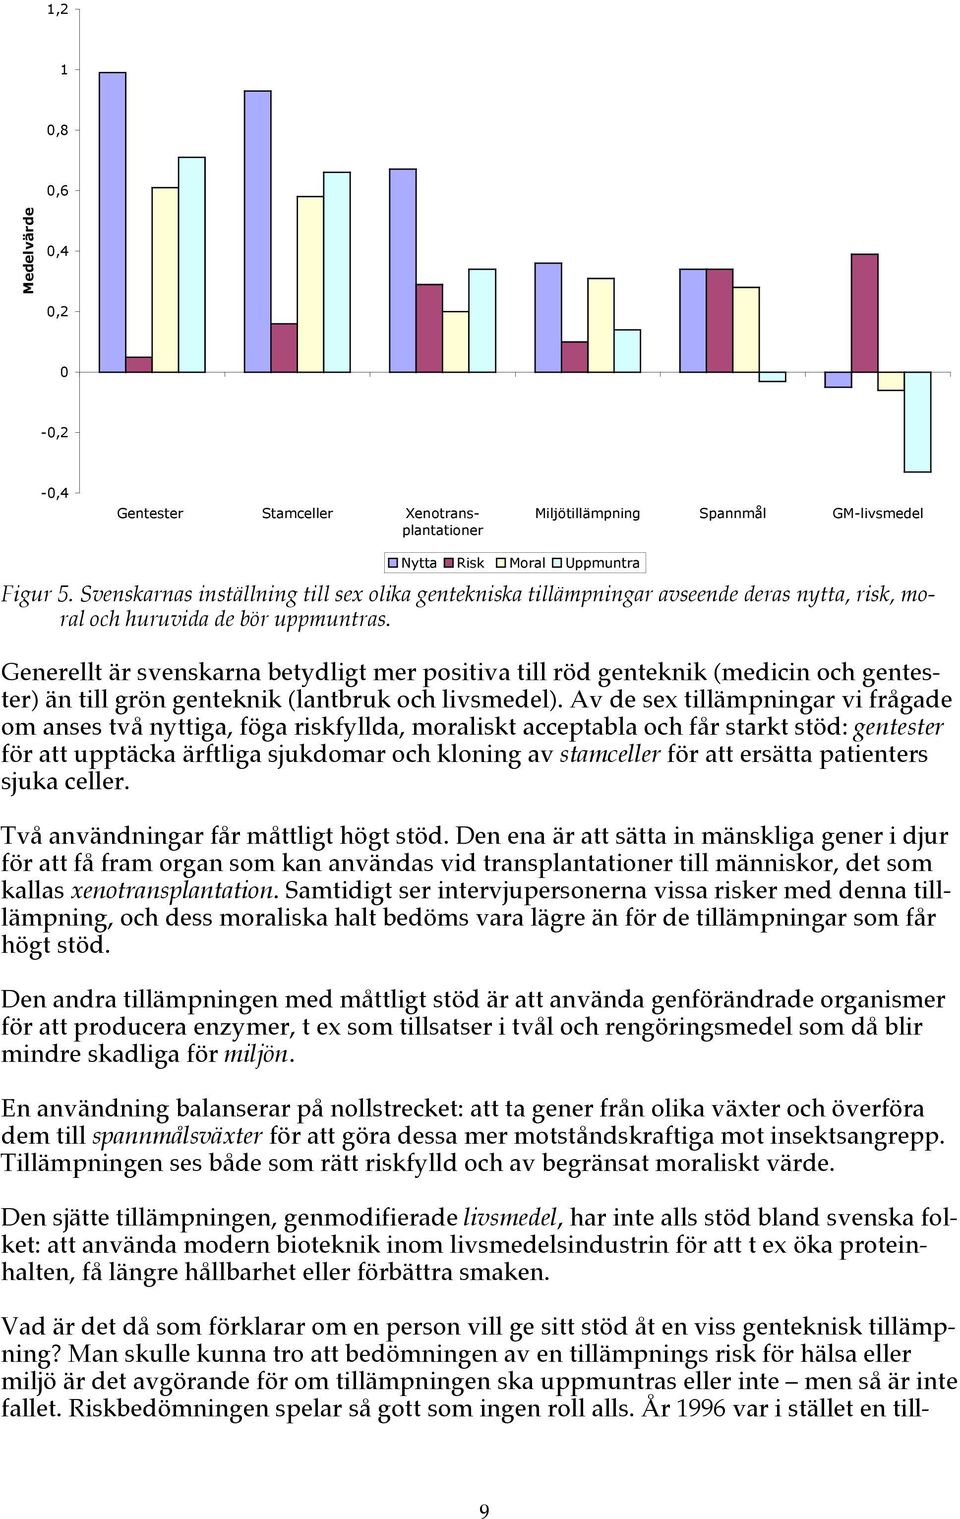 Generellt är svenskarna betydligt mer positiva till röd genteknik (medicin och gentester) än till grön genteknik (lantbruk och livsmedel).